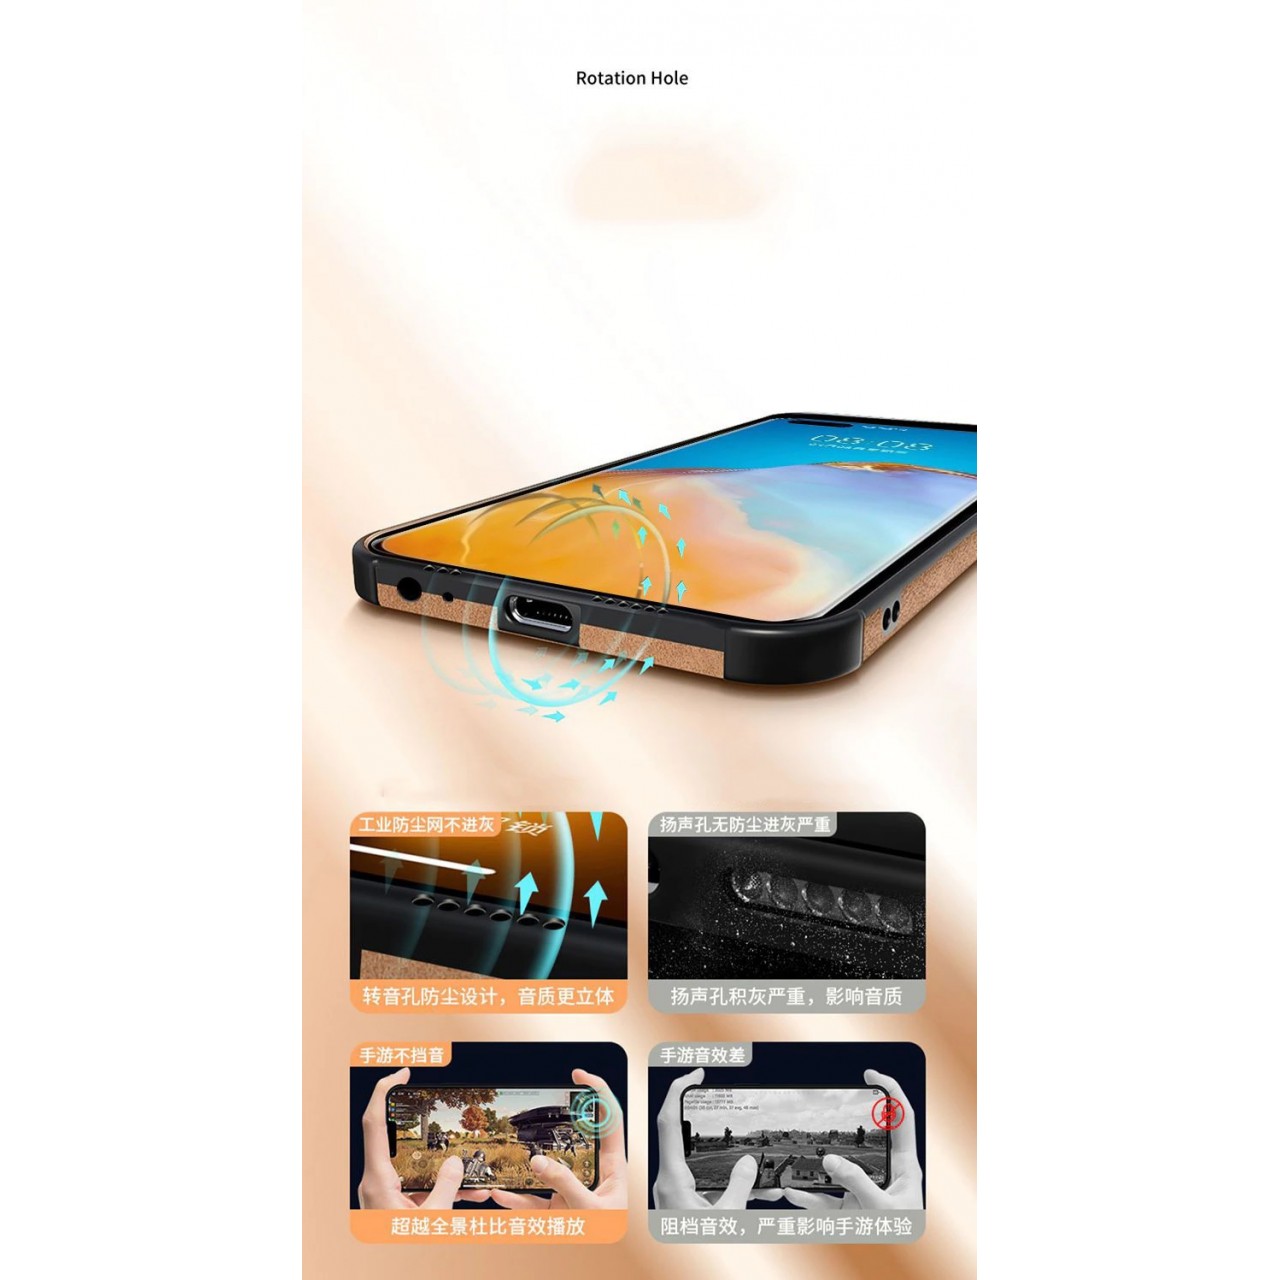 Θήκη με Προστασία Κάμερας Shockproof Lampskin Leather BackCase iPhone 13 - Grey